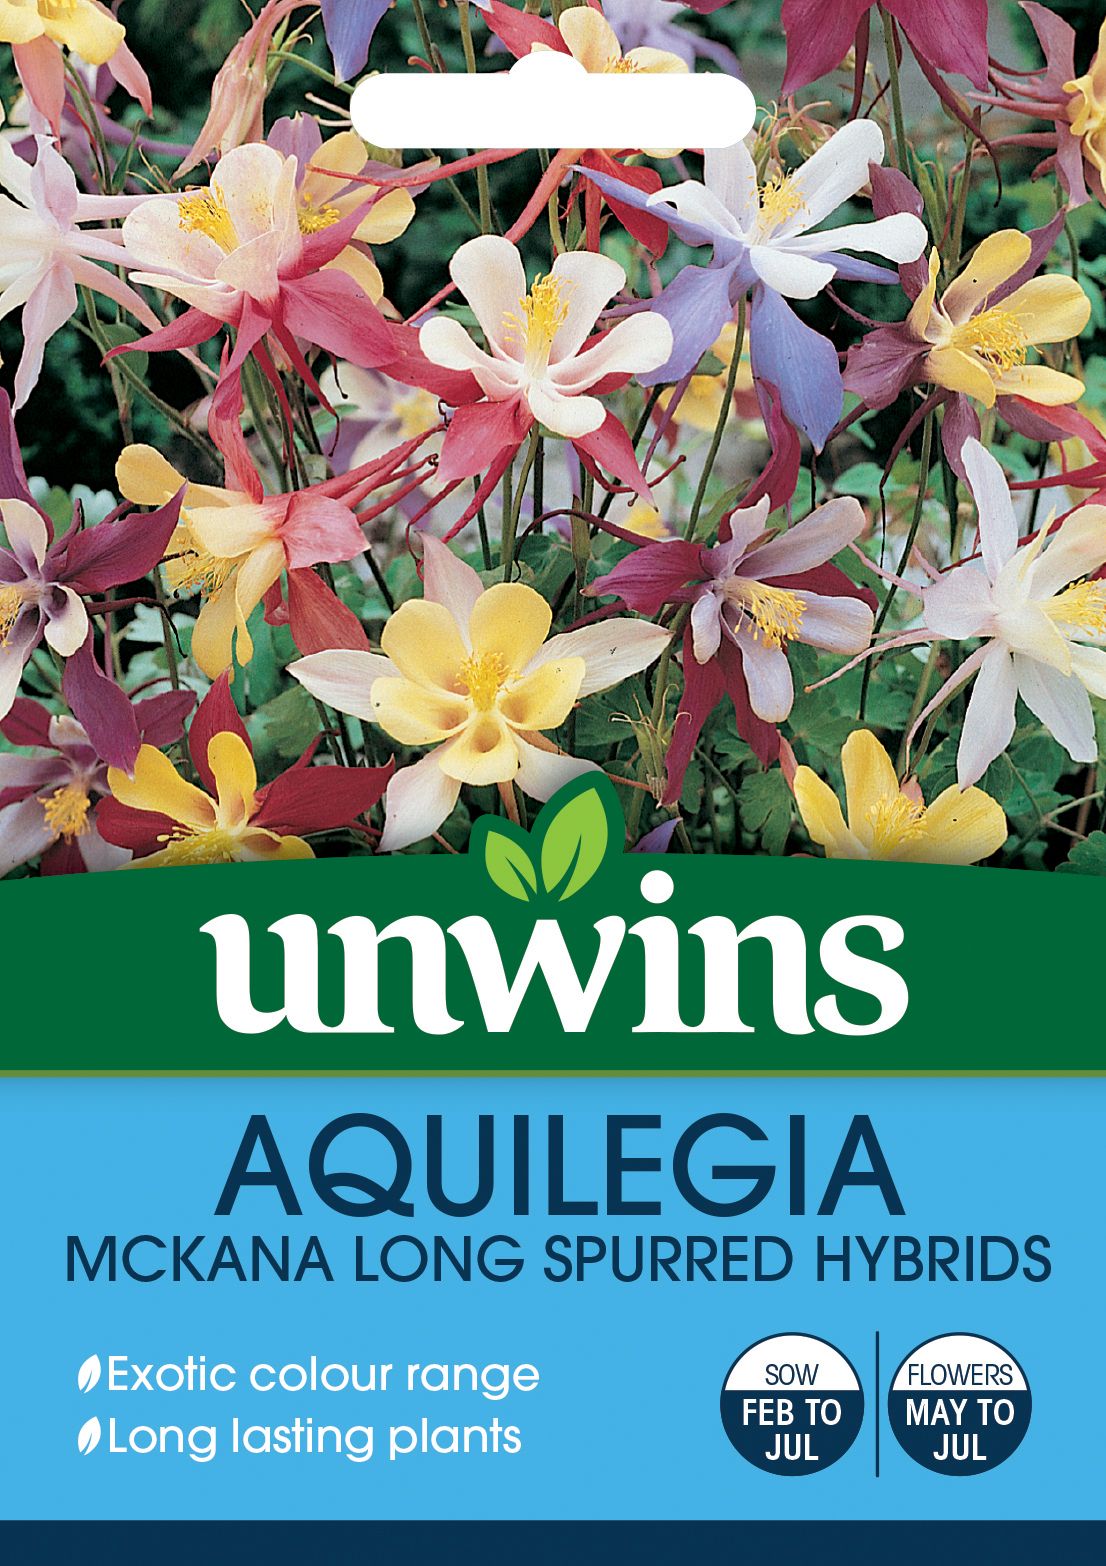 Aquilegia Mckana Long Spurred Hybrids